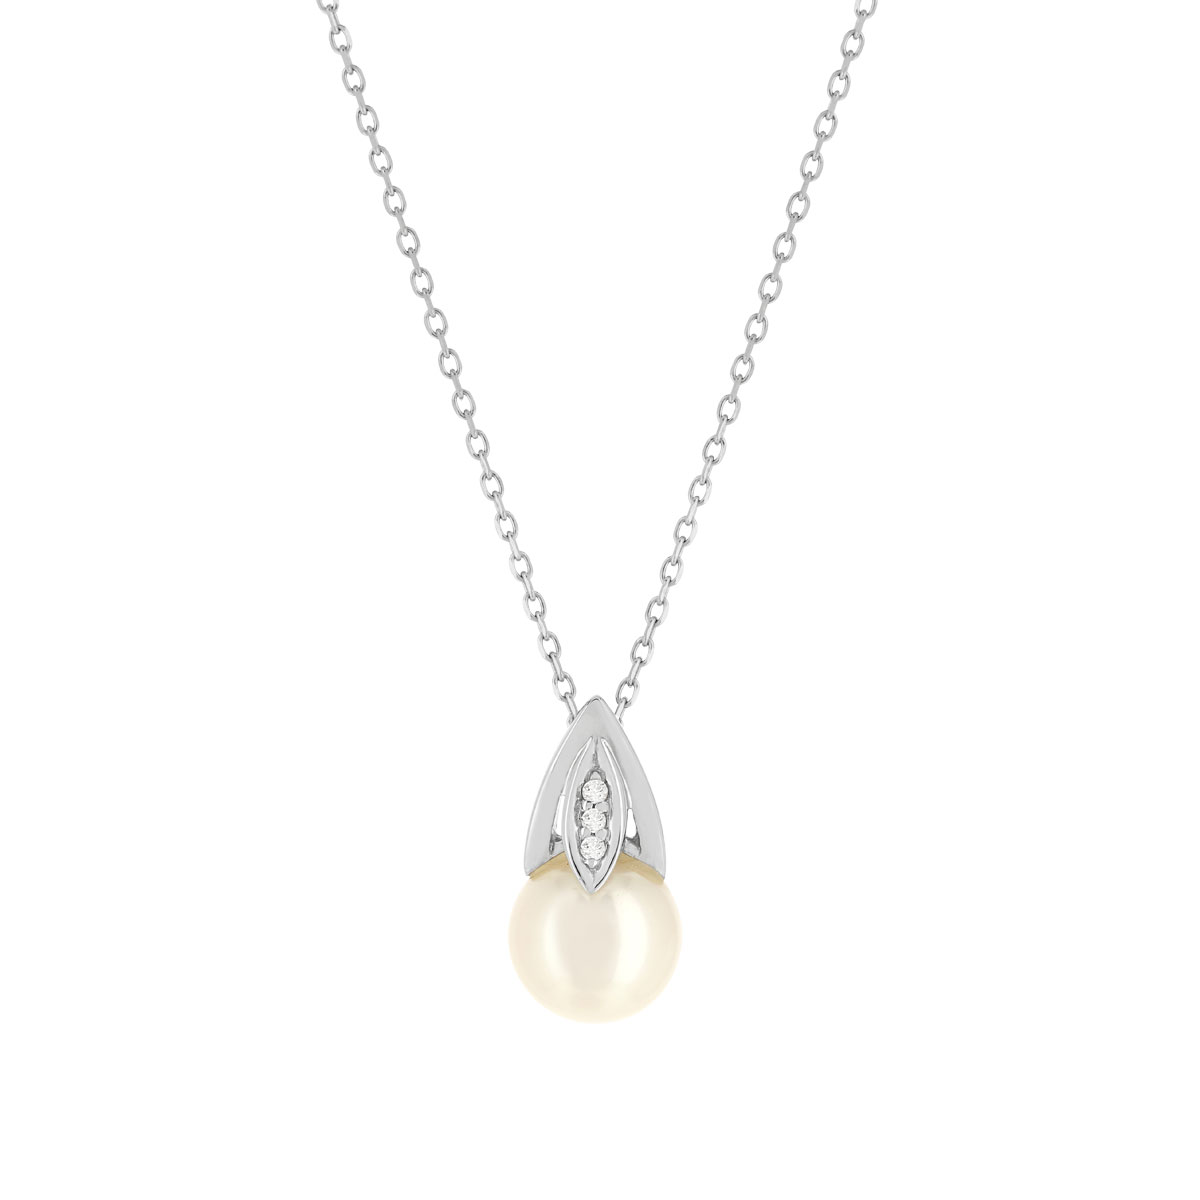 Collier or blanc 375, perle de culture de Chine, diamants. Longueur 45 cm.